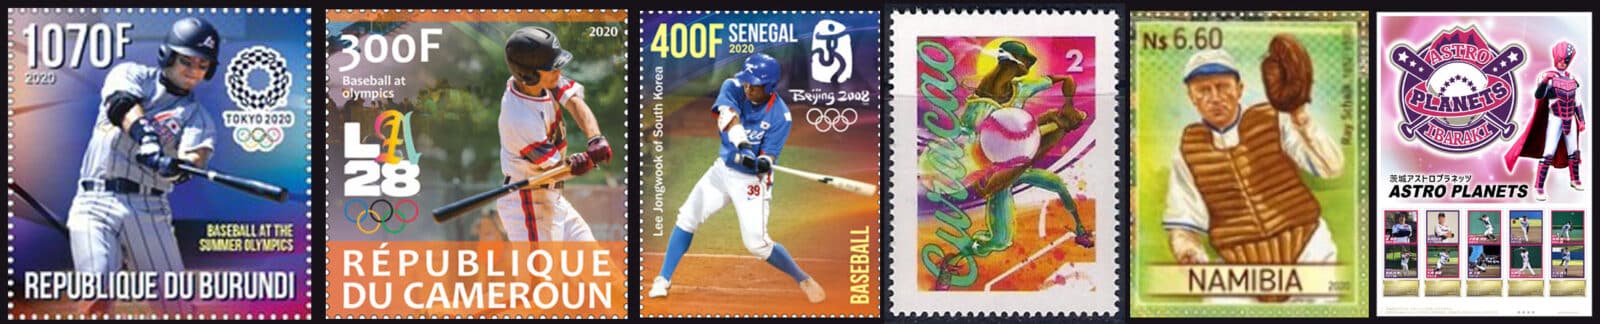 2020 Baseball Postage Stamps header